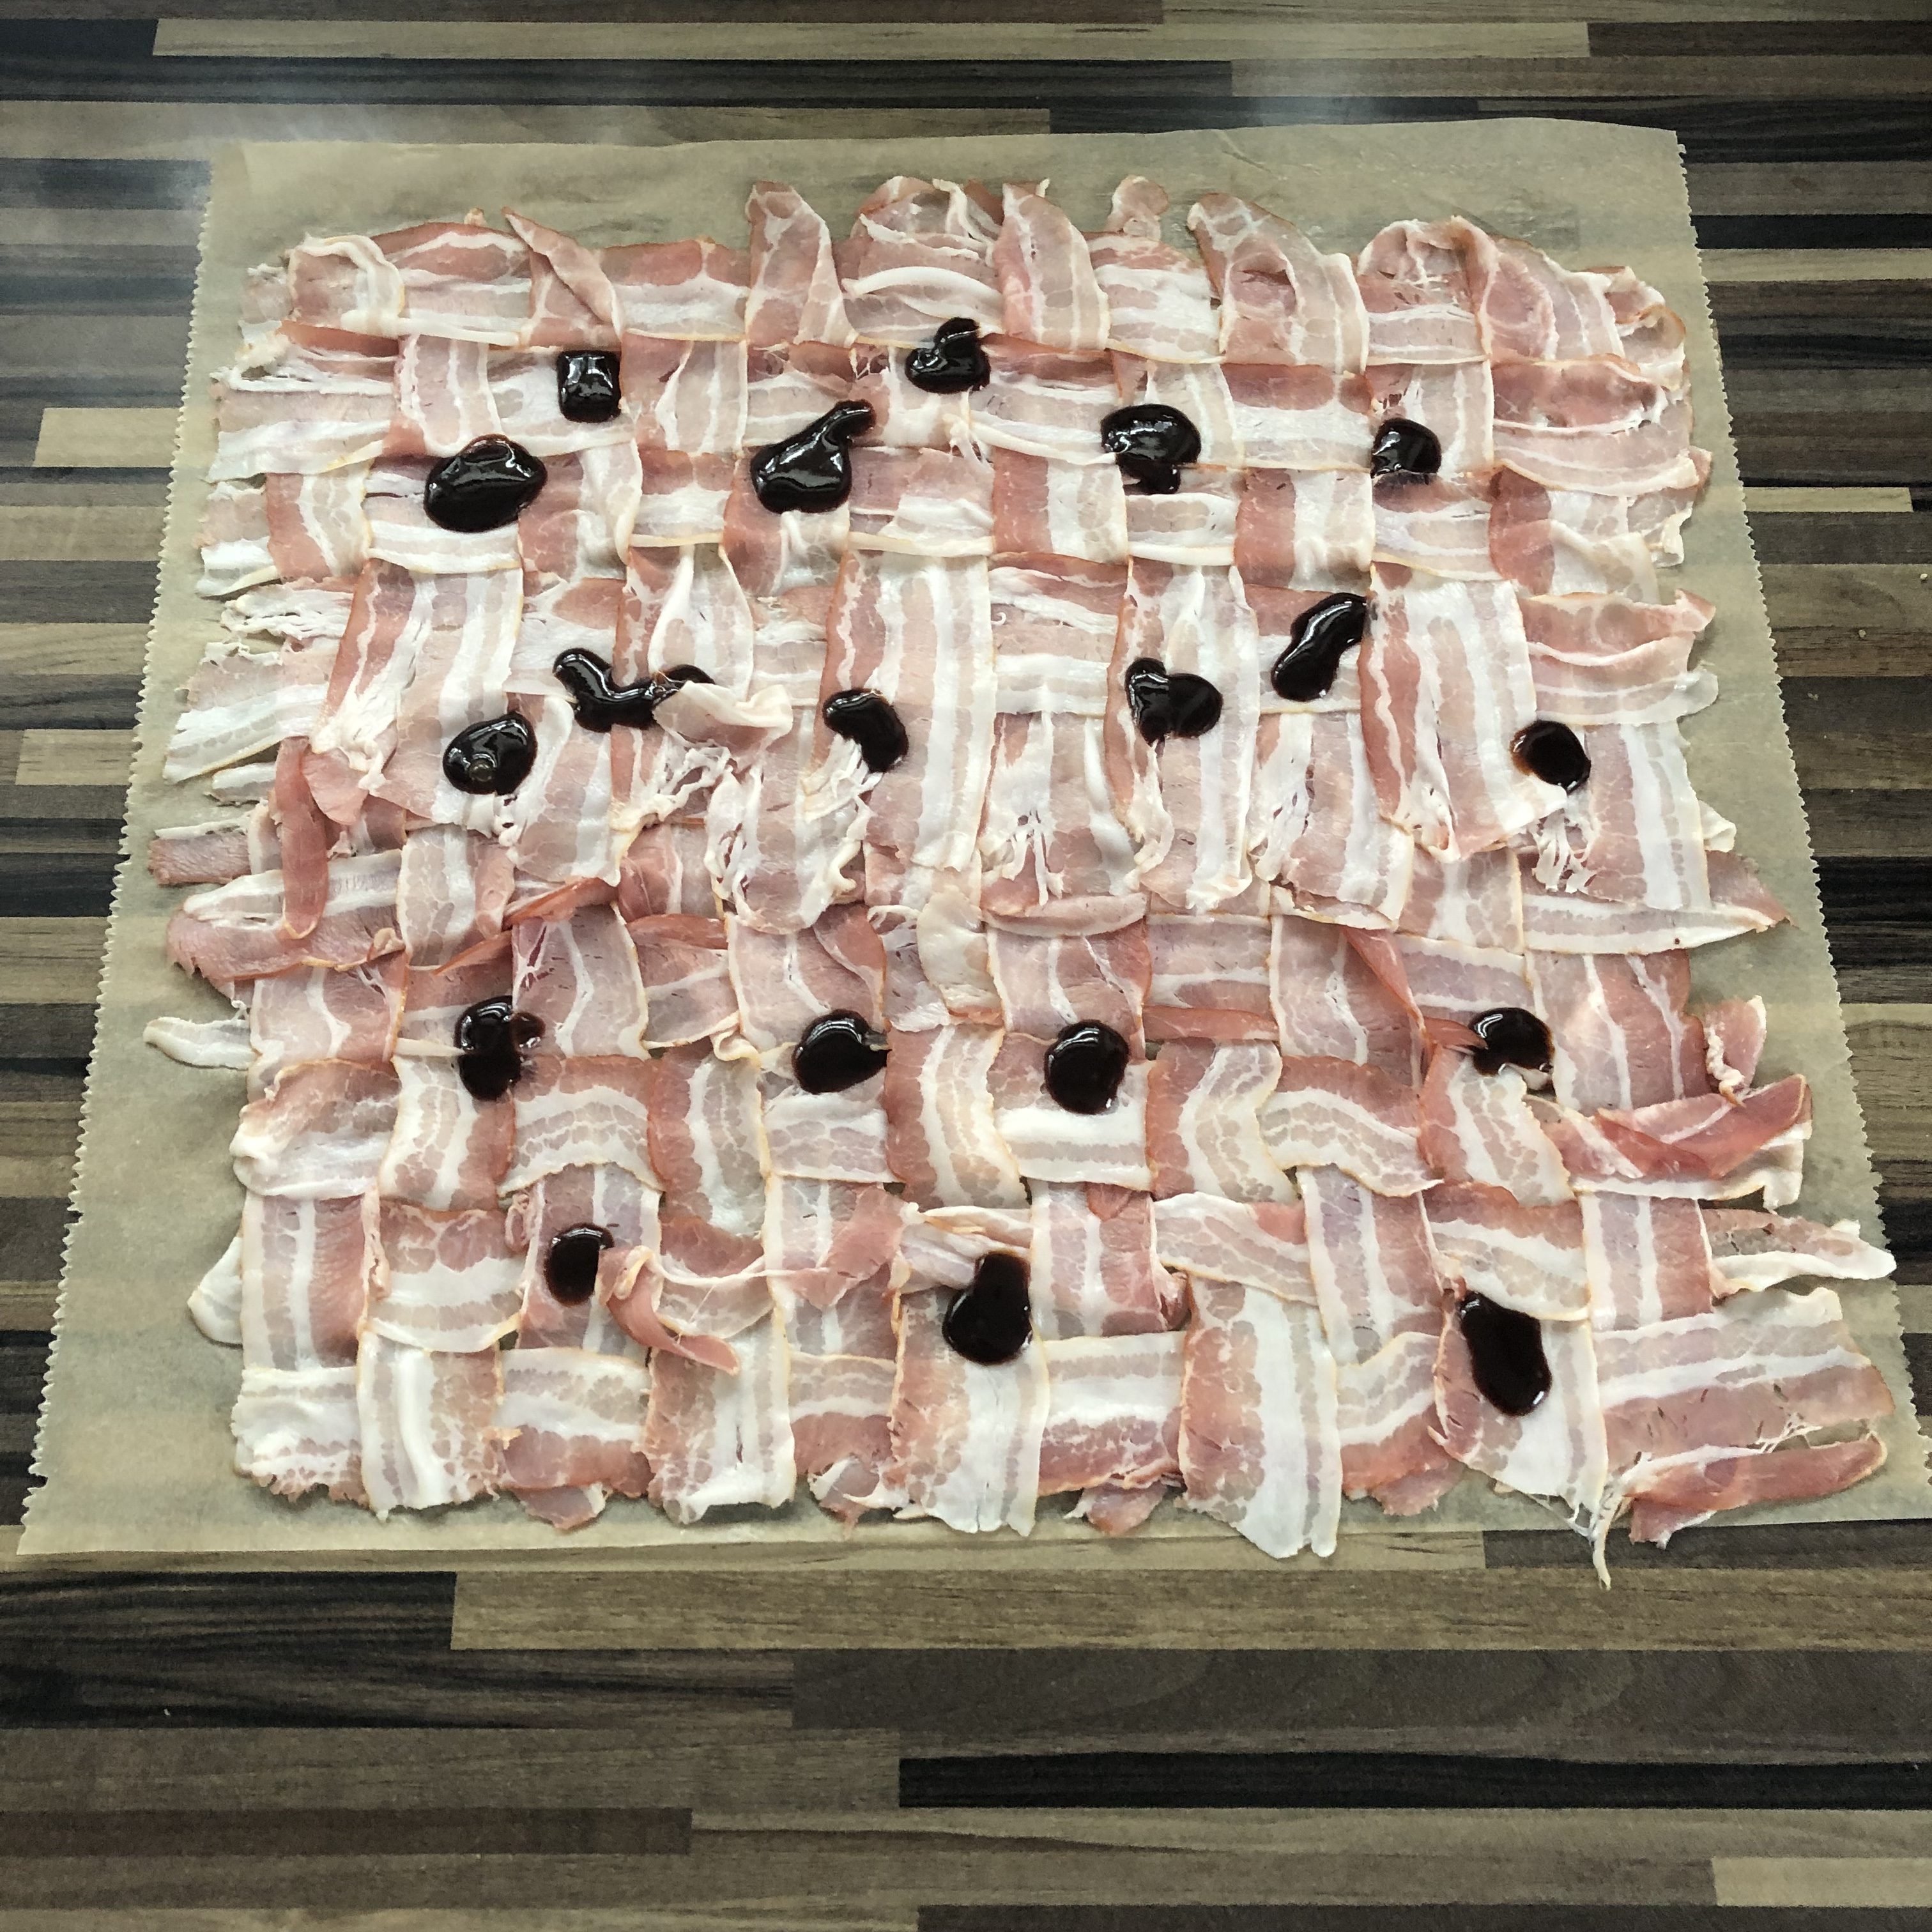 Gefülltes Schweinefilet in Bacon aus dem Hickory-Rauch